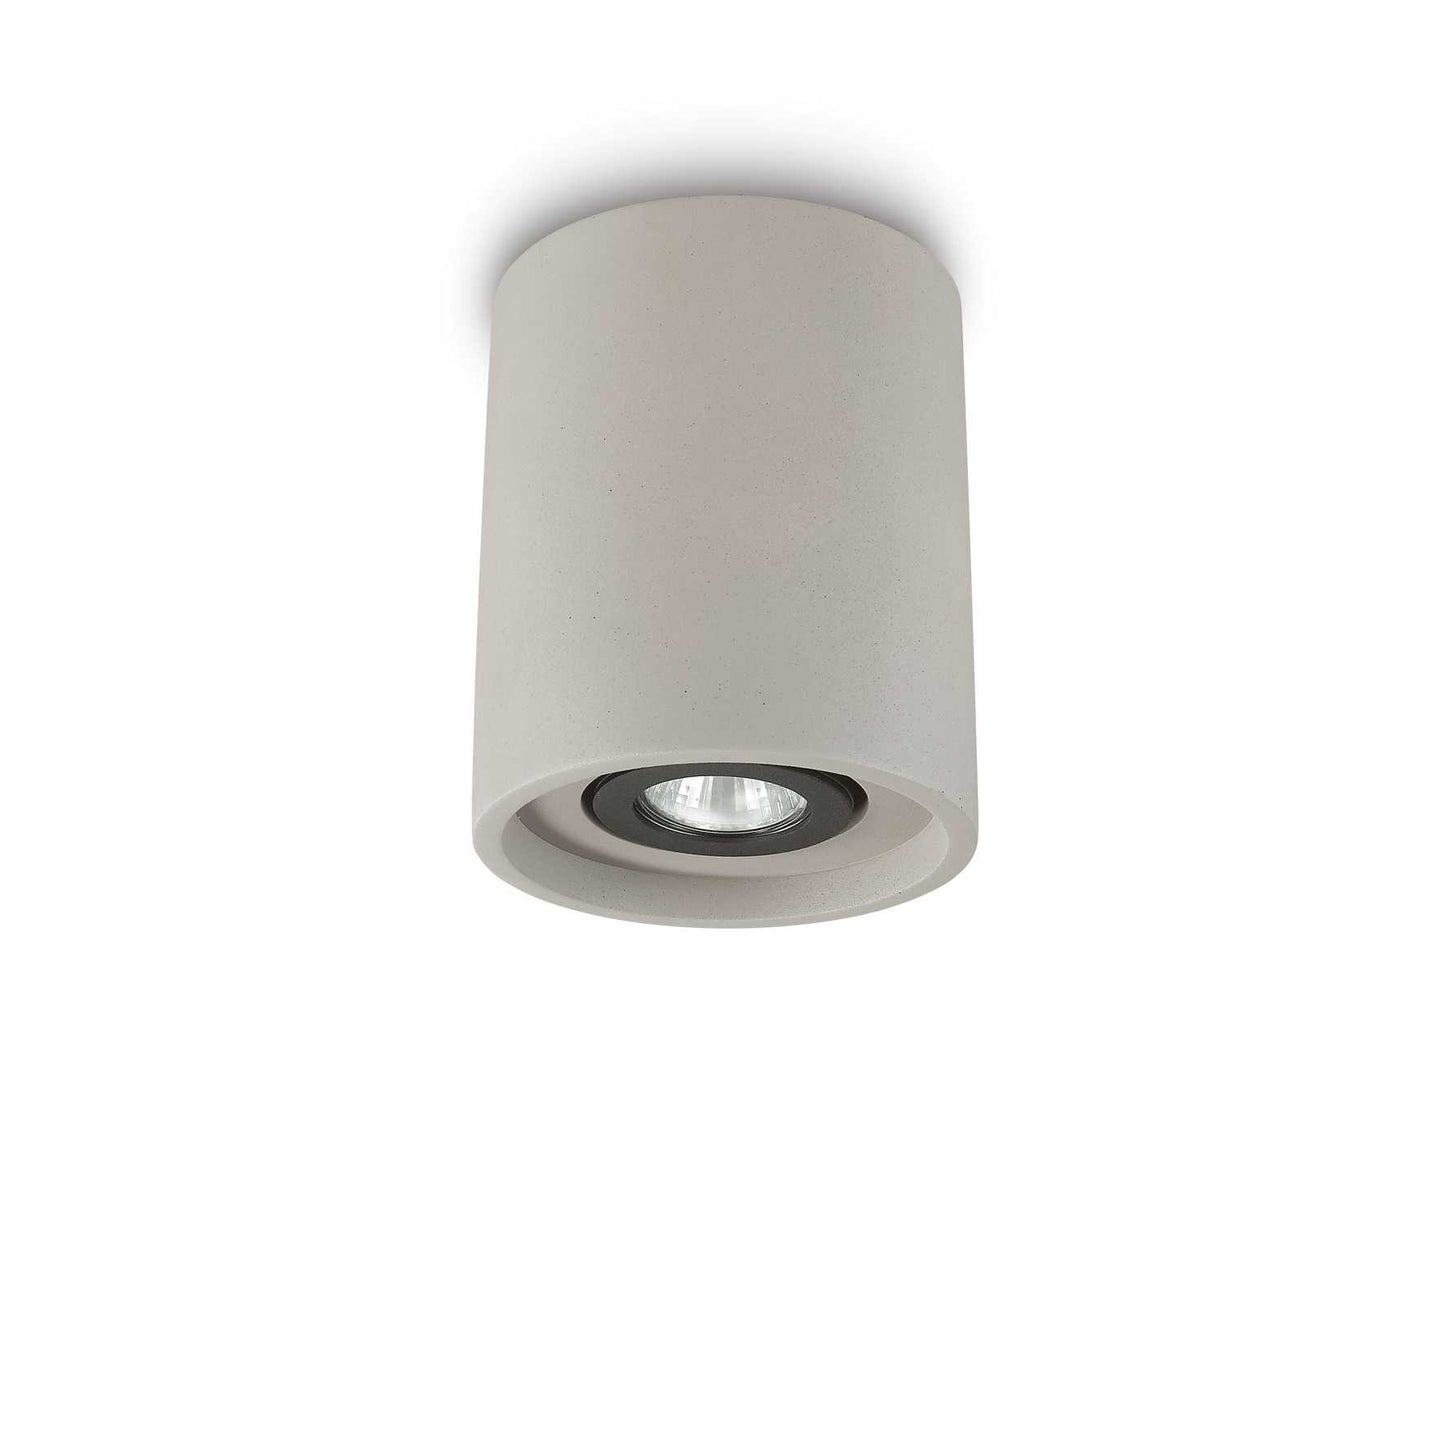 Ideal Lux Oak PL1 Round Ceiling Light